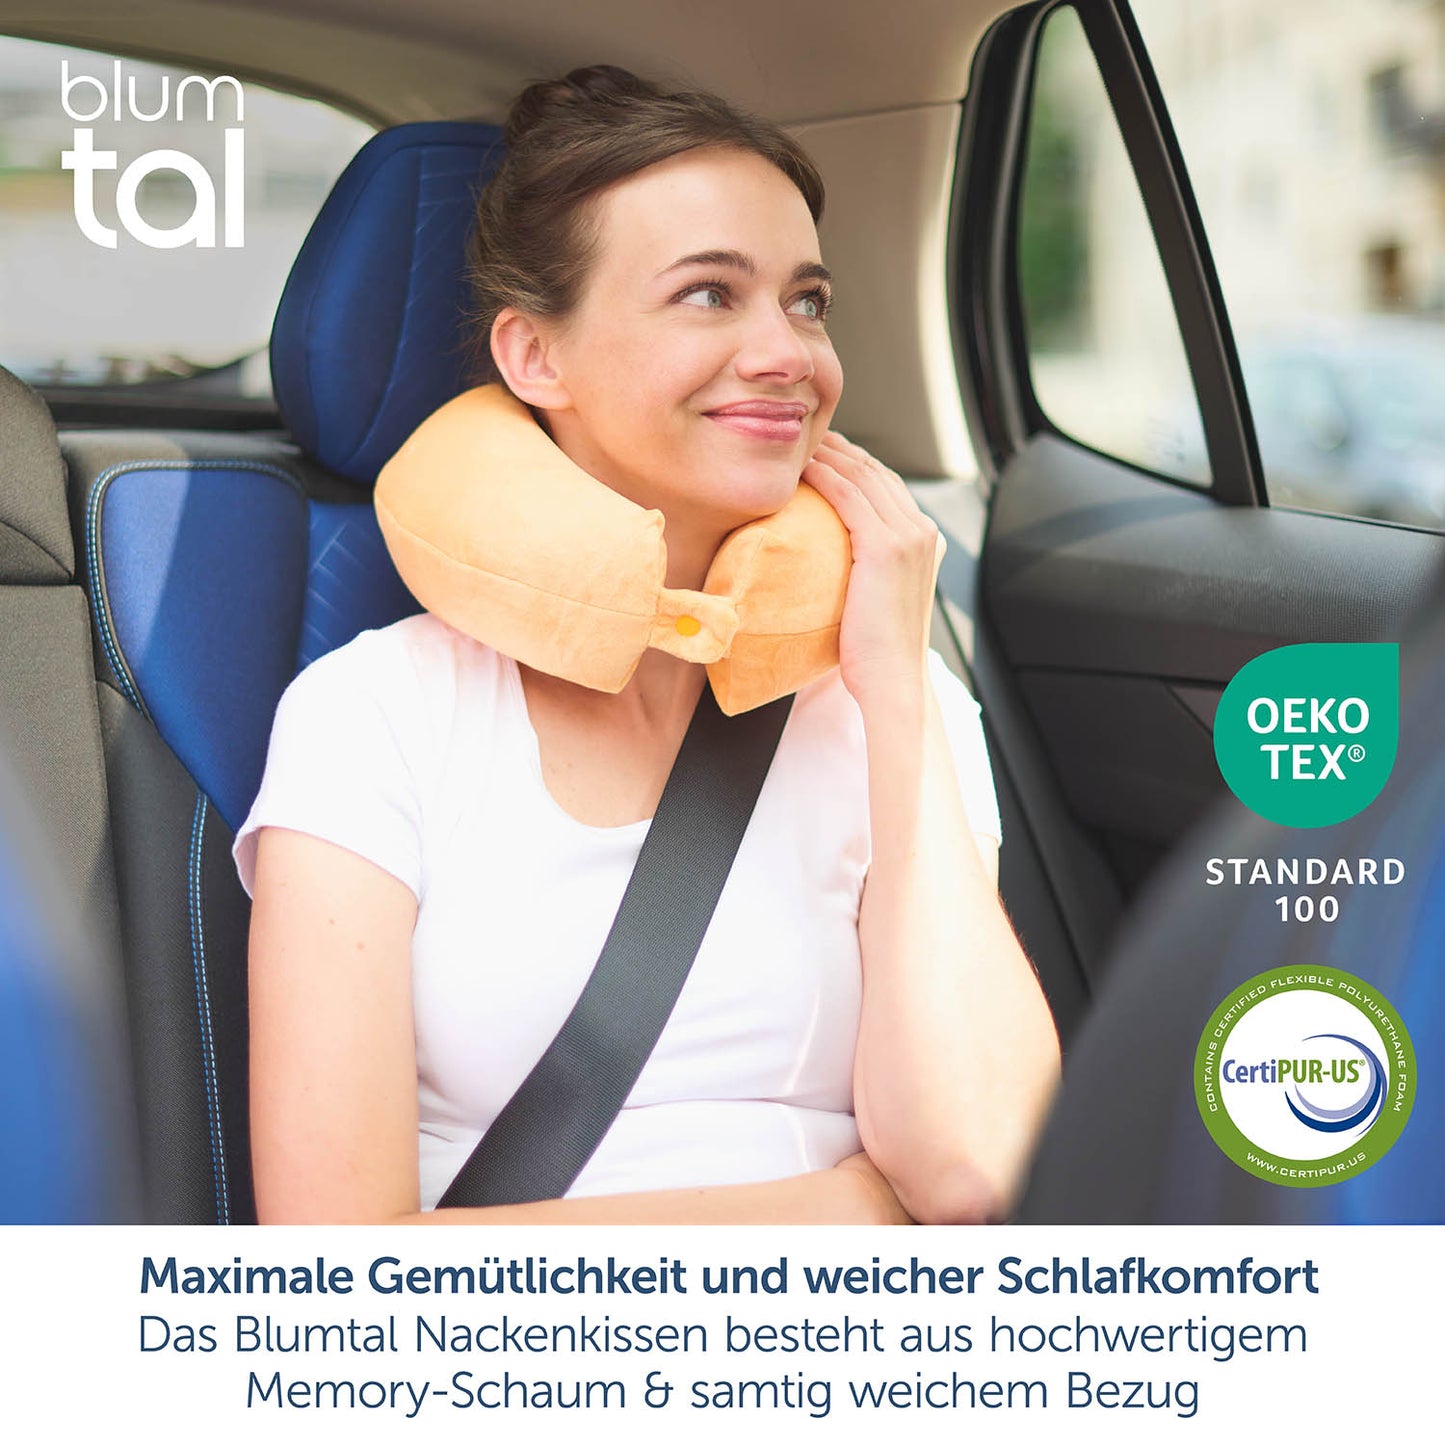 Das Bild zeigt eine lächelnde Frau im Beifahrersitz eines Autos, die ein oranges Nackenkissen von Blumtal trägt. Sie schaut nachdenklich zur Seite und trägt ein weißes T-Shirt. Im oberen Bildbereich ist das Blumtal-Logo platziert. Auf der rechten Seite befinden sich das OEKO-TEX® und CertiPUR-US® Siegel, welche auf unbedenkliche Materialien hinweisen.